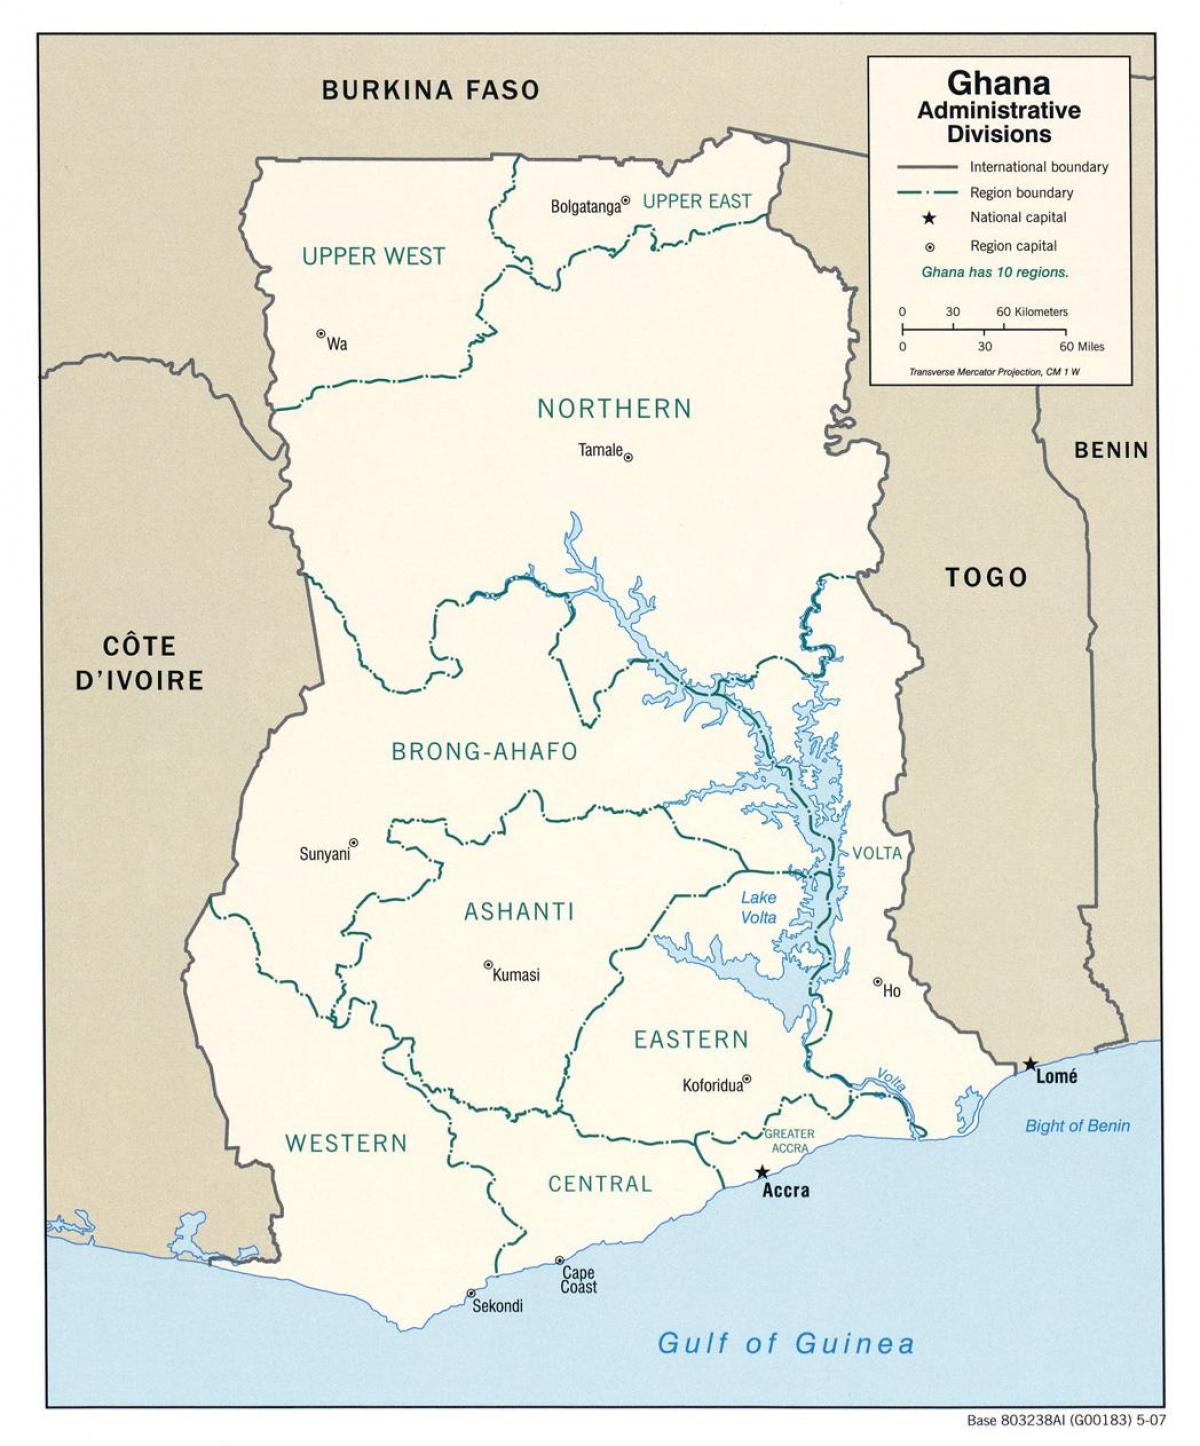 घाना के साथ नक्शा क्षेत्रों और जिलों